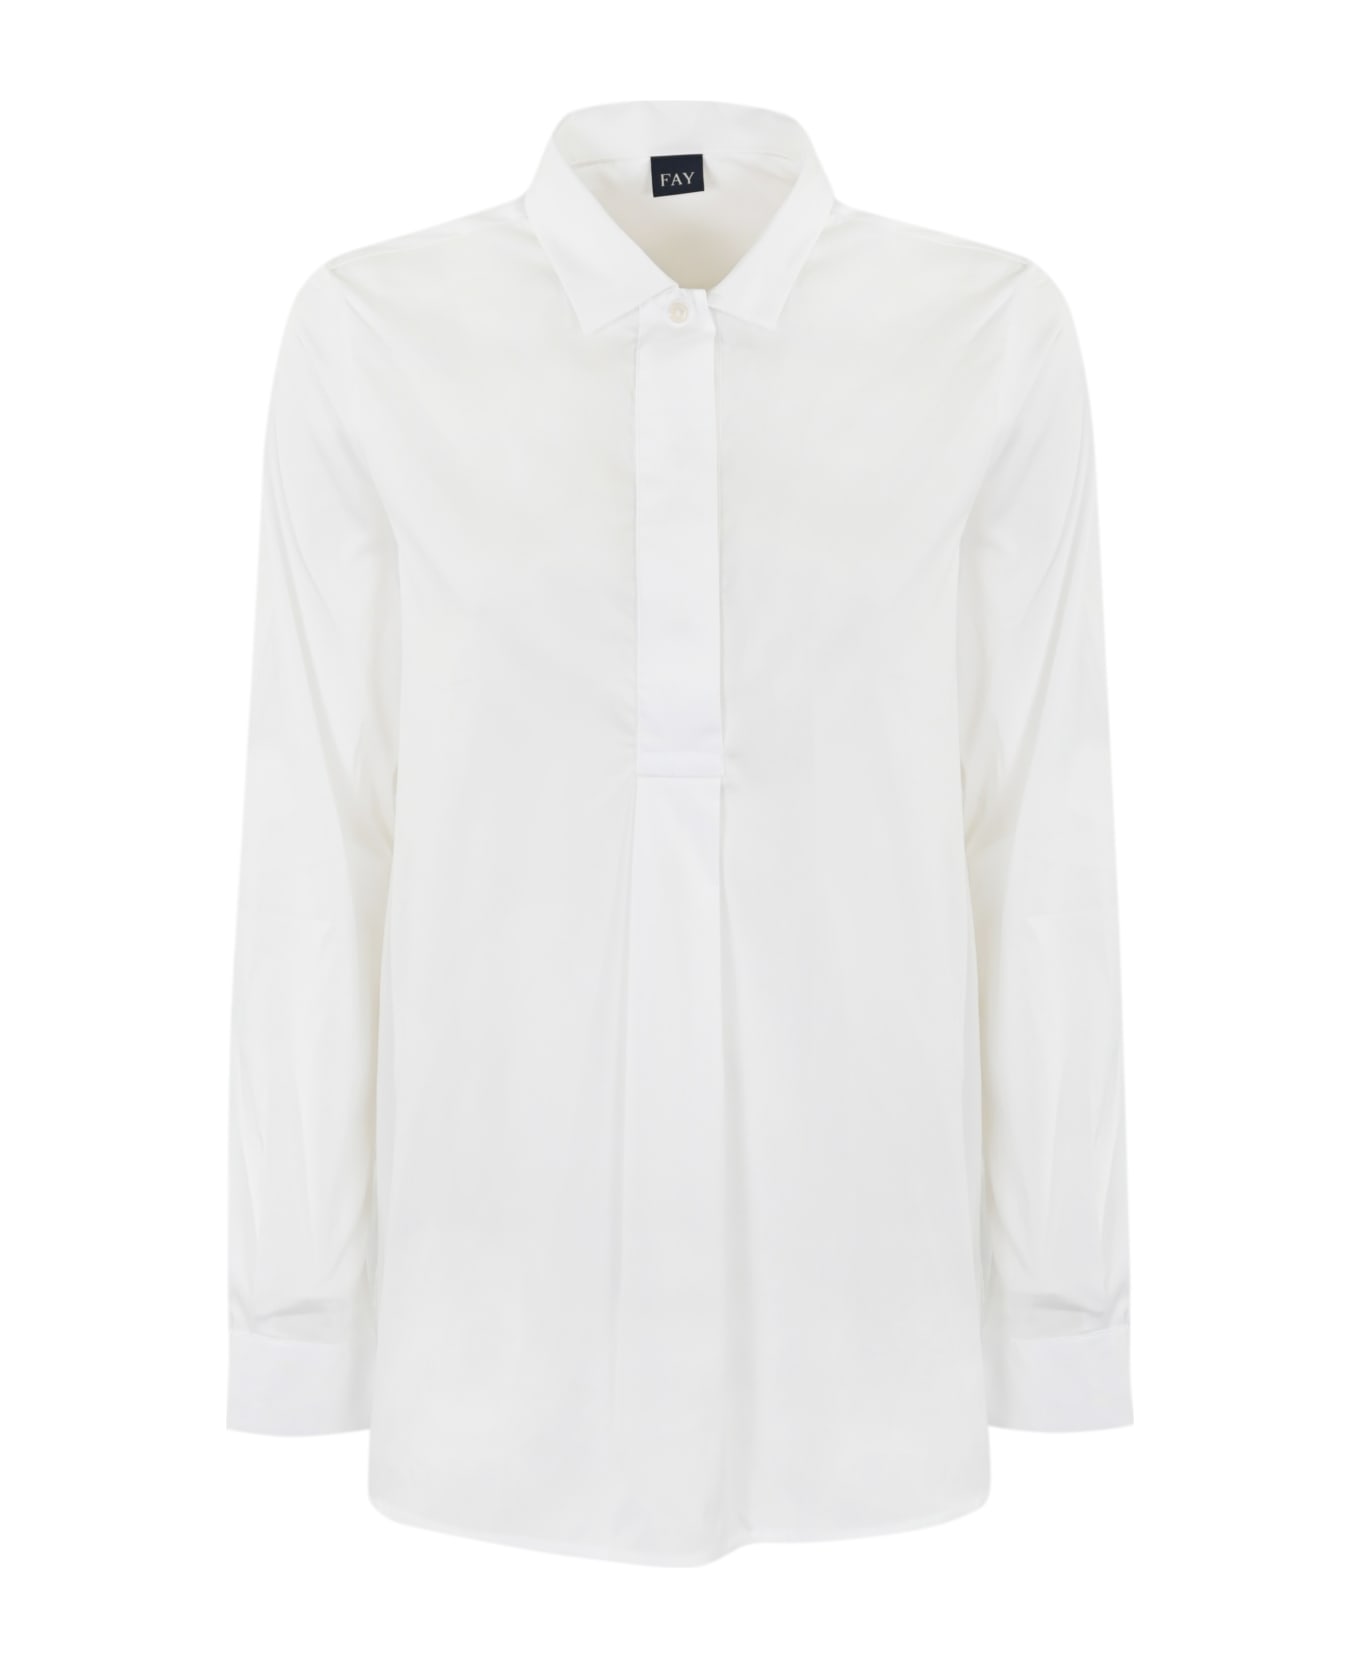 Fay Stretch Poplin Shirt - Bianco シャツ